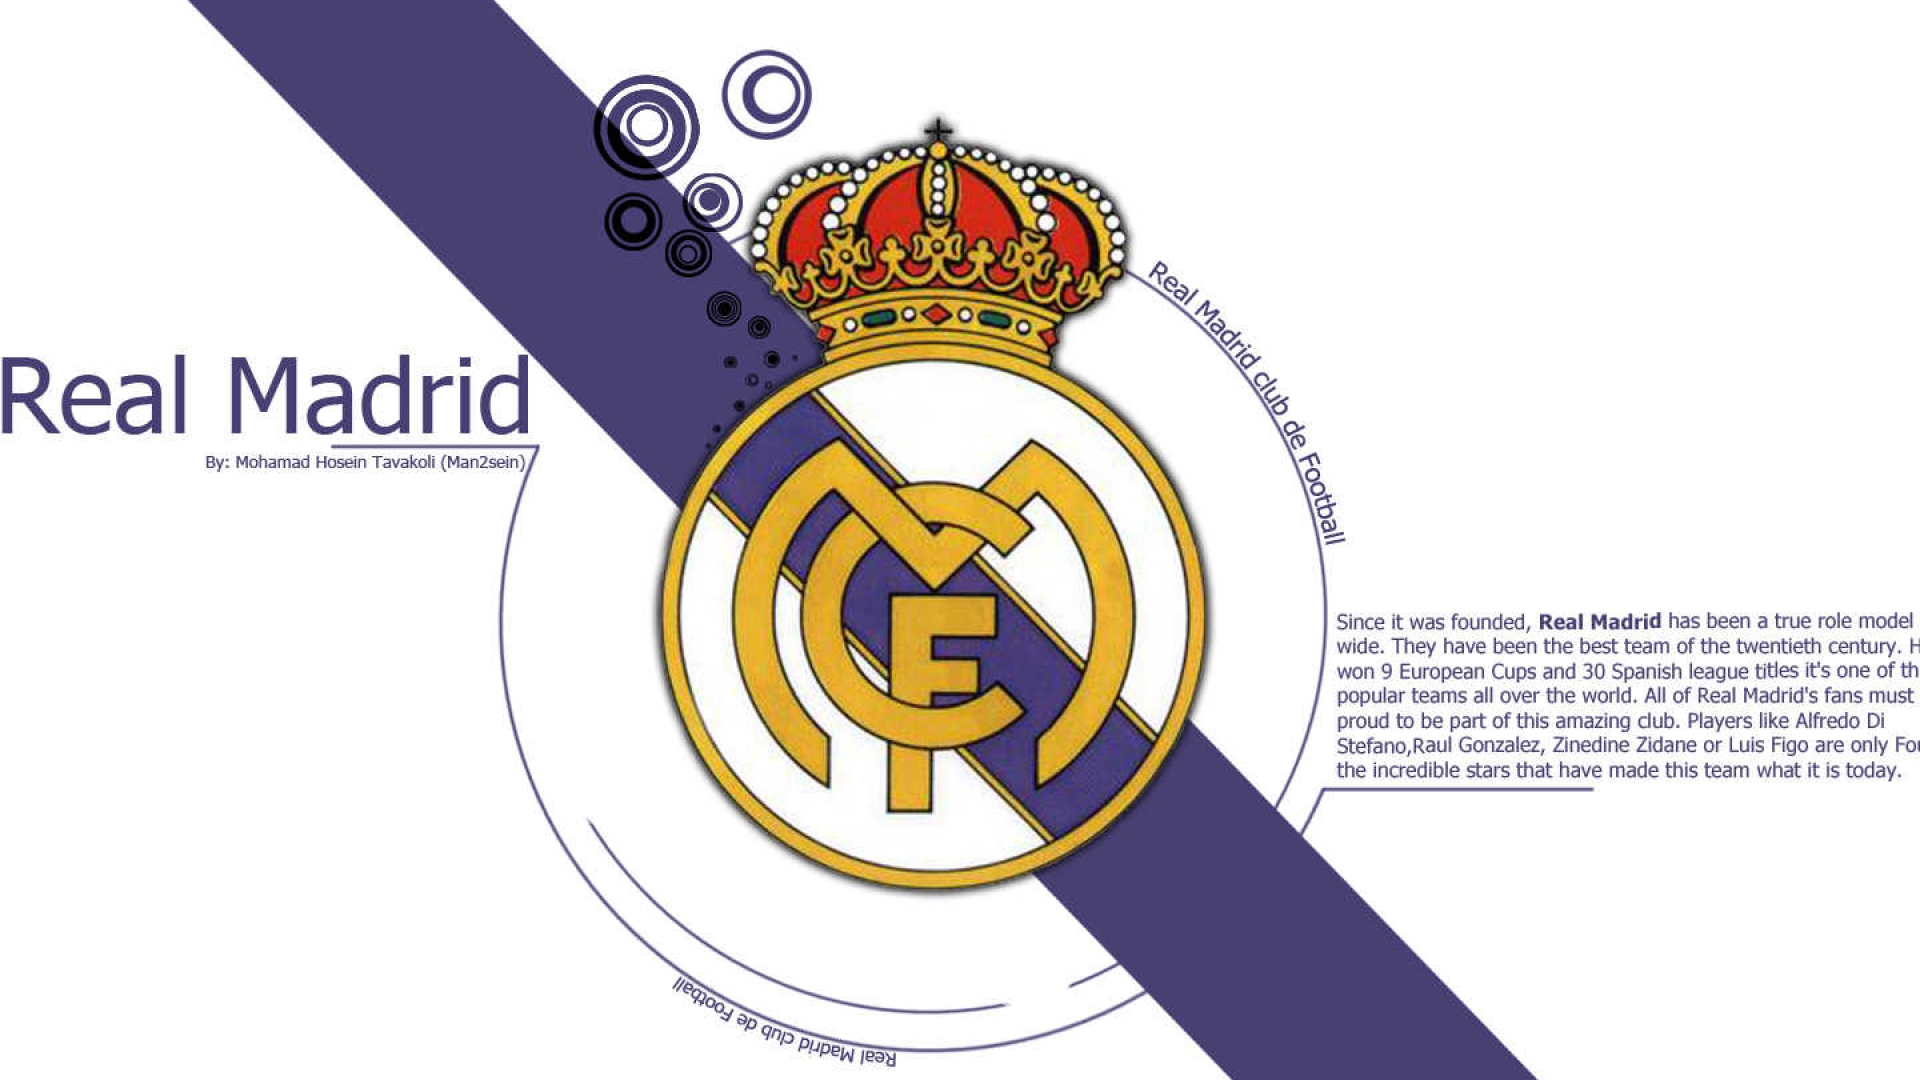 46+ Wallpaper Real Madrid 1080p on WallpaperSafari